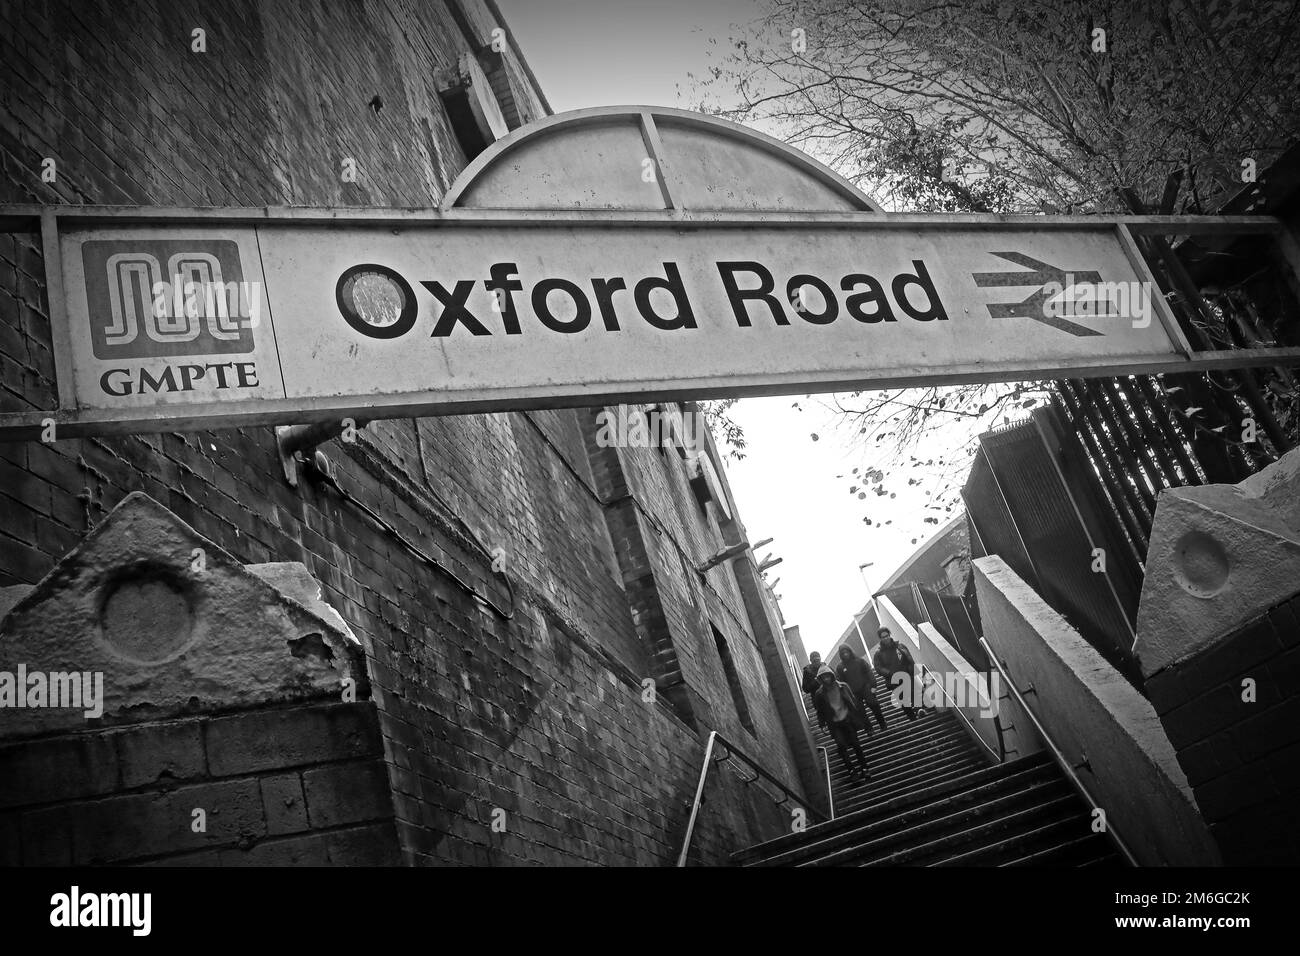 BW-Bild des Eingangs des britischen Bahnhofs Oxford Road GMPTE, Manchester, England, UK, M1 6FU Stockfoto